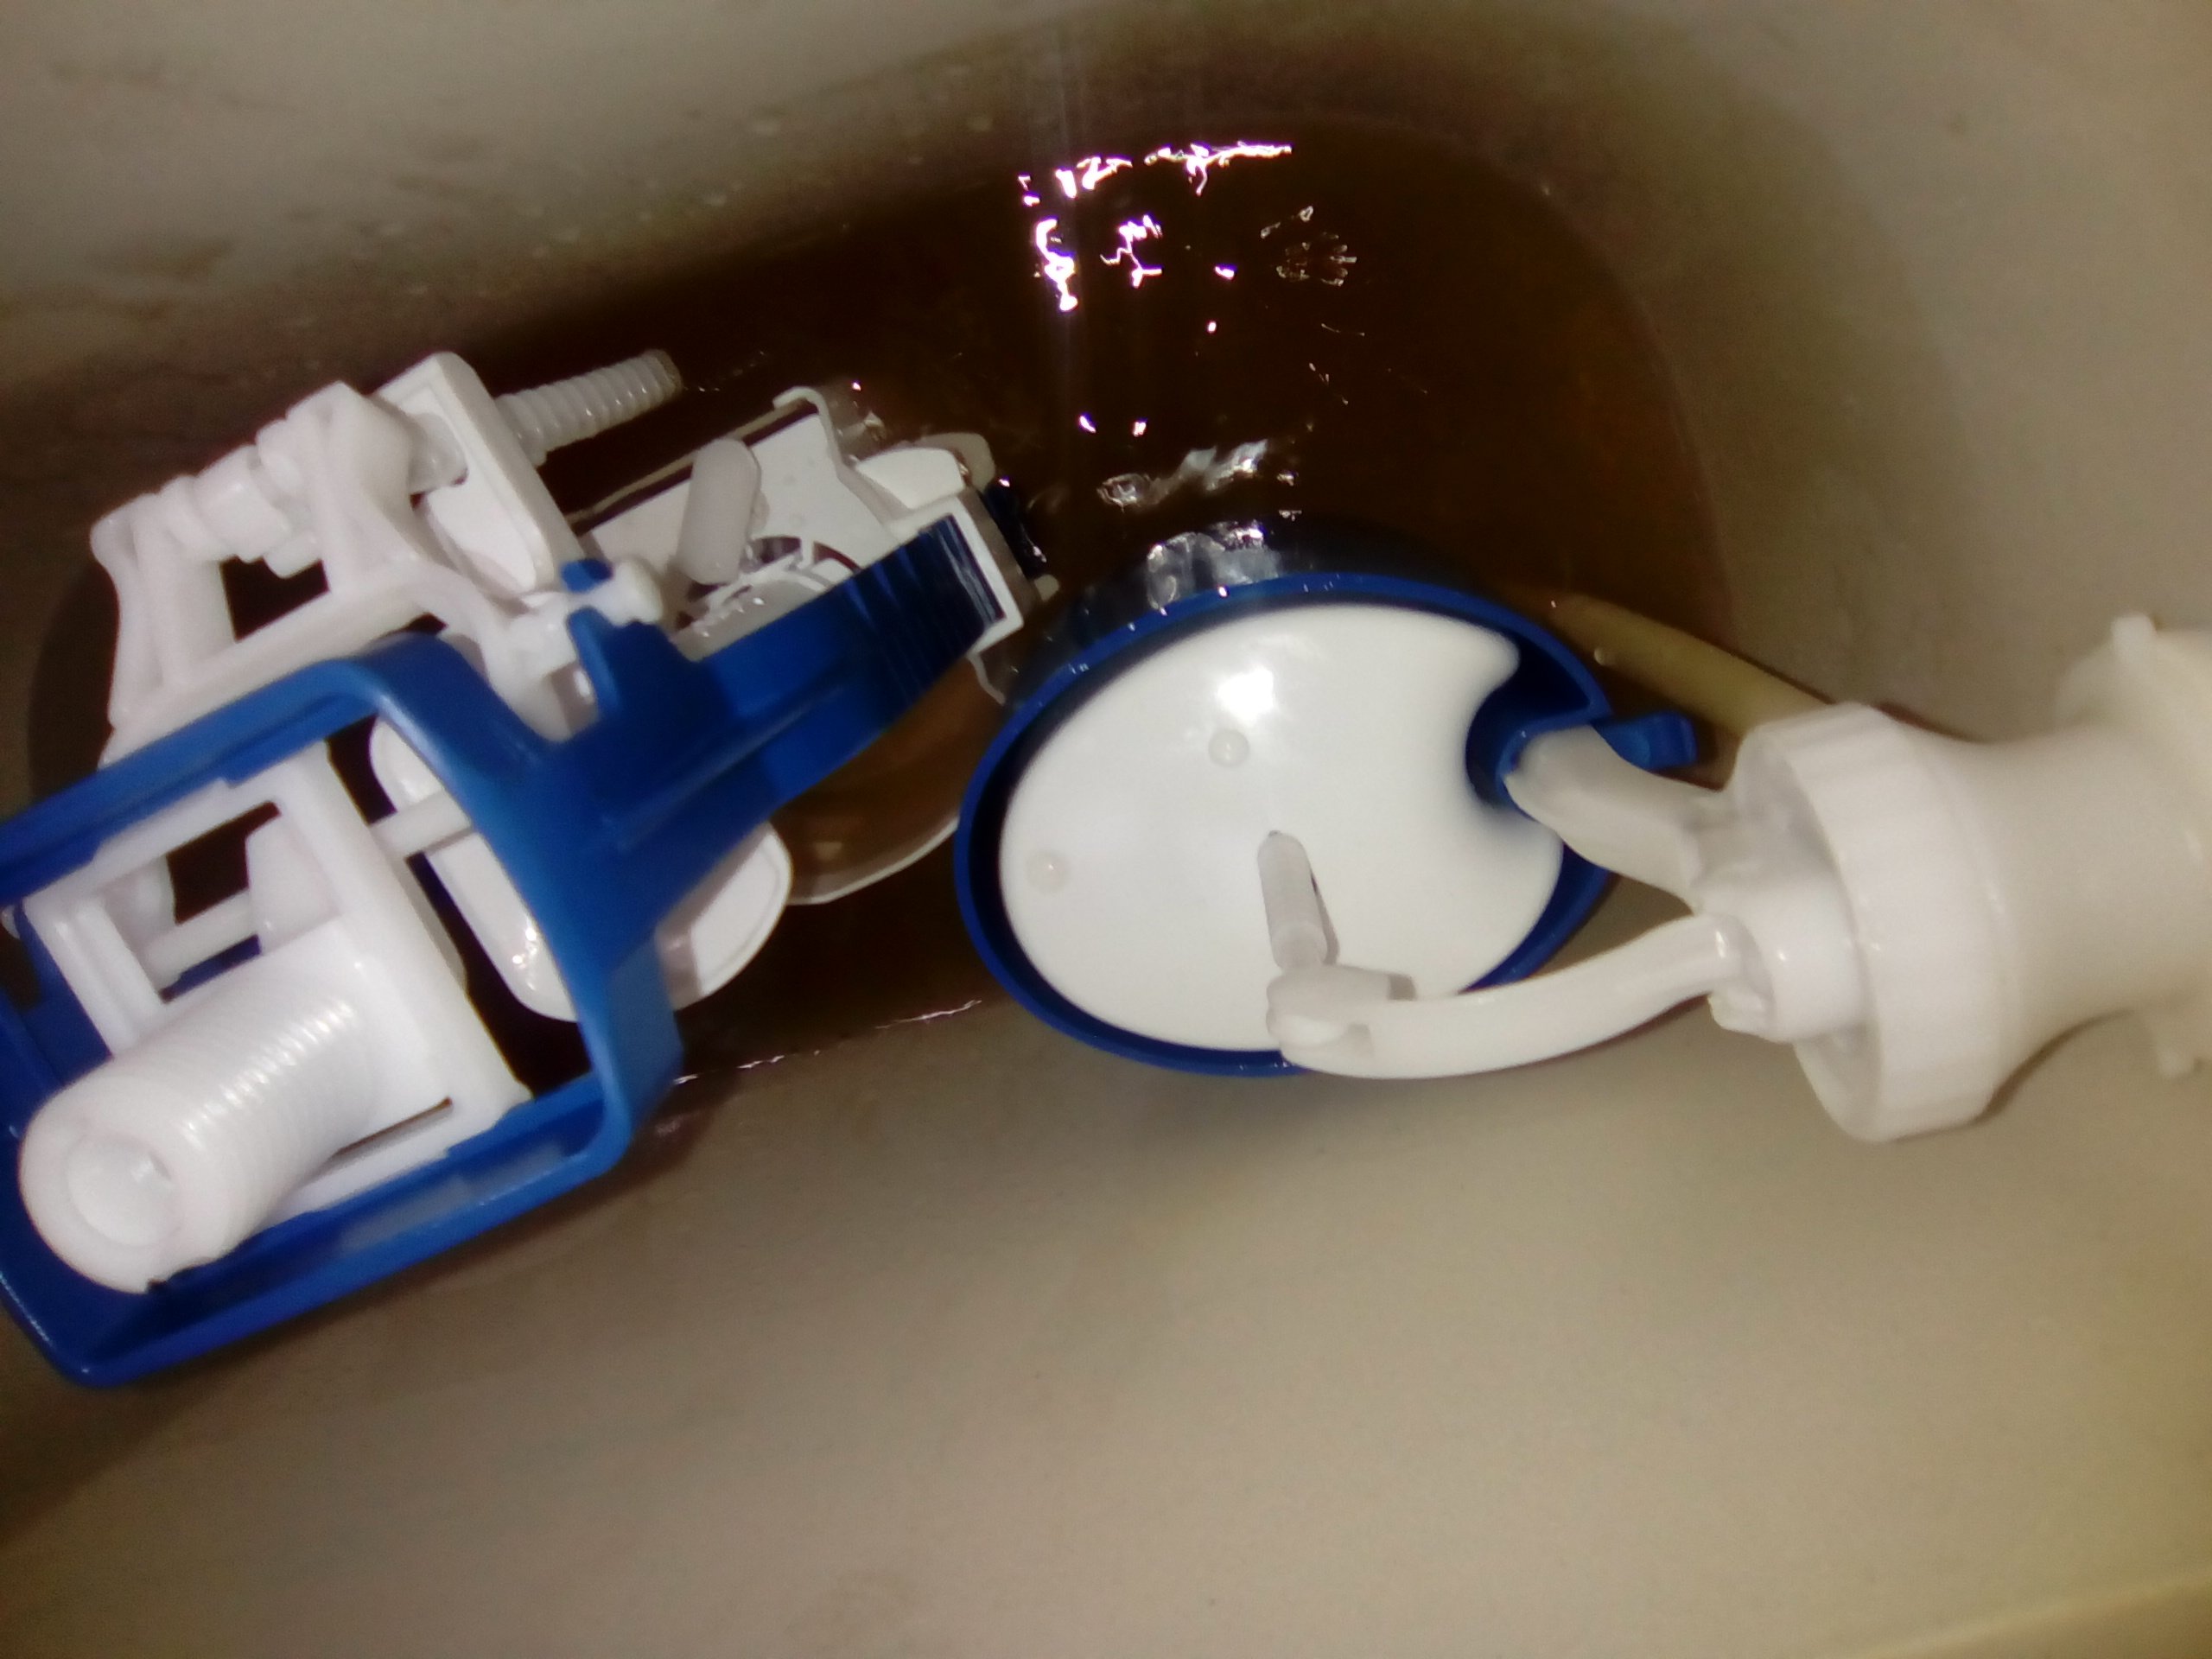 Как поменять клапан подачи воды бачка унитаза с нижней подводкой воды!